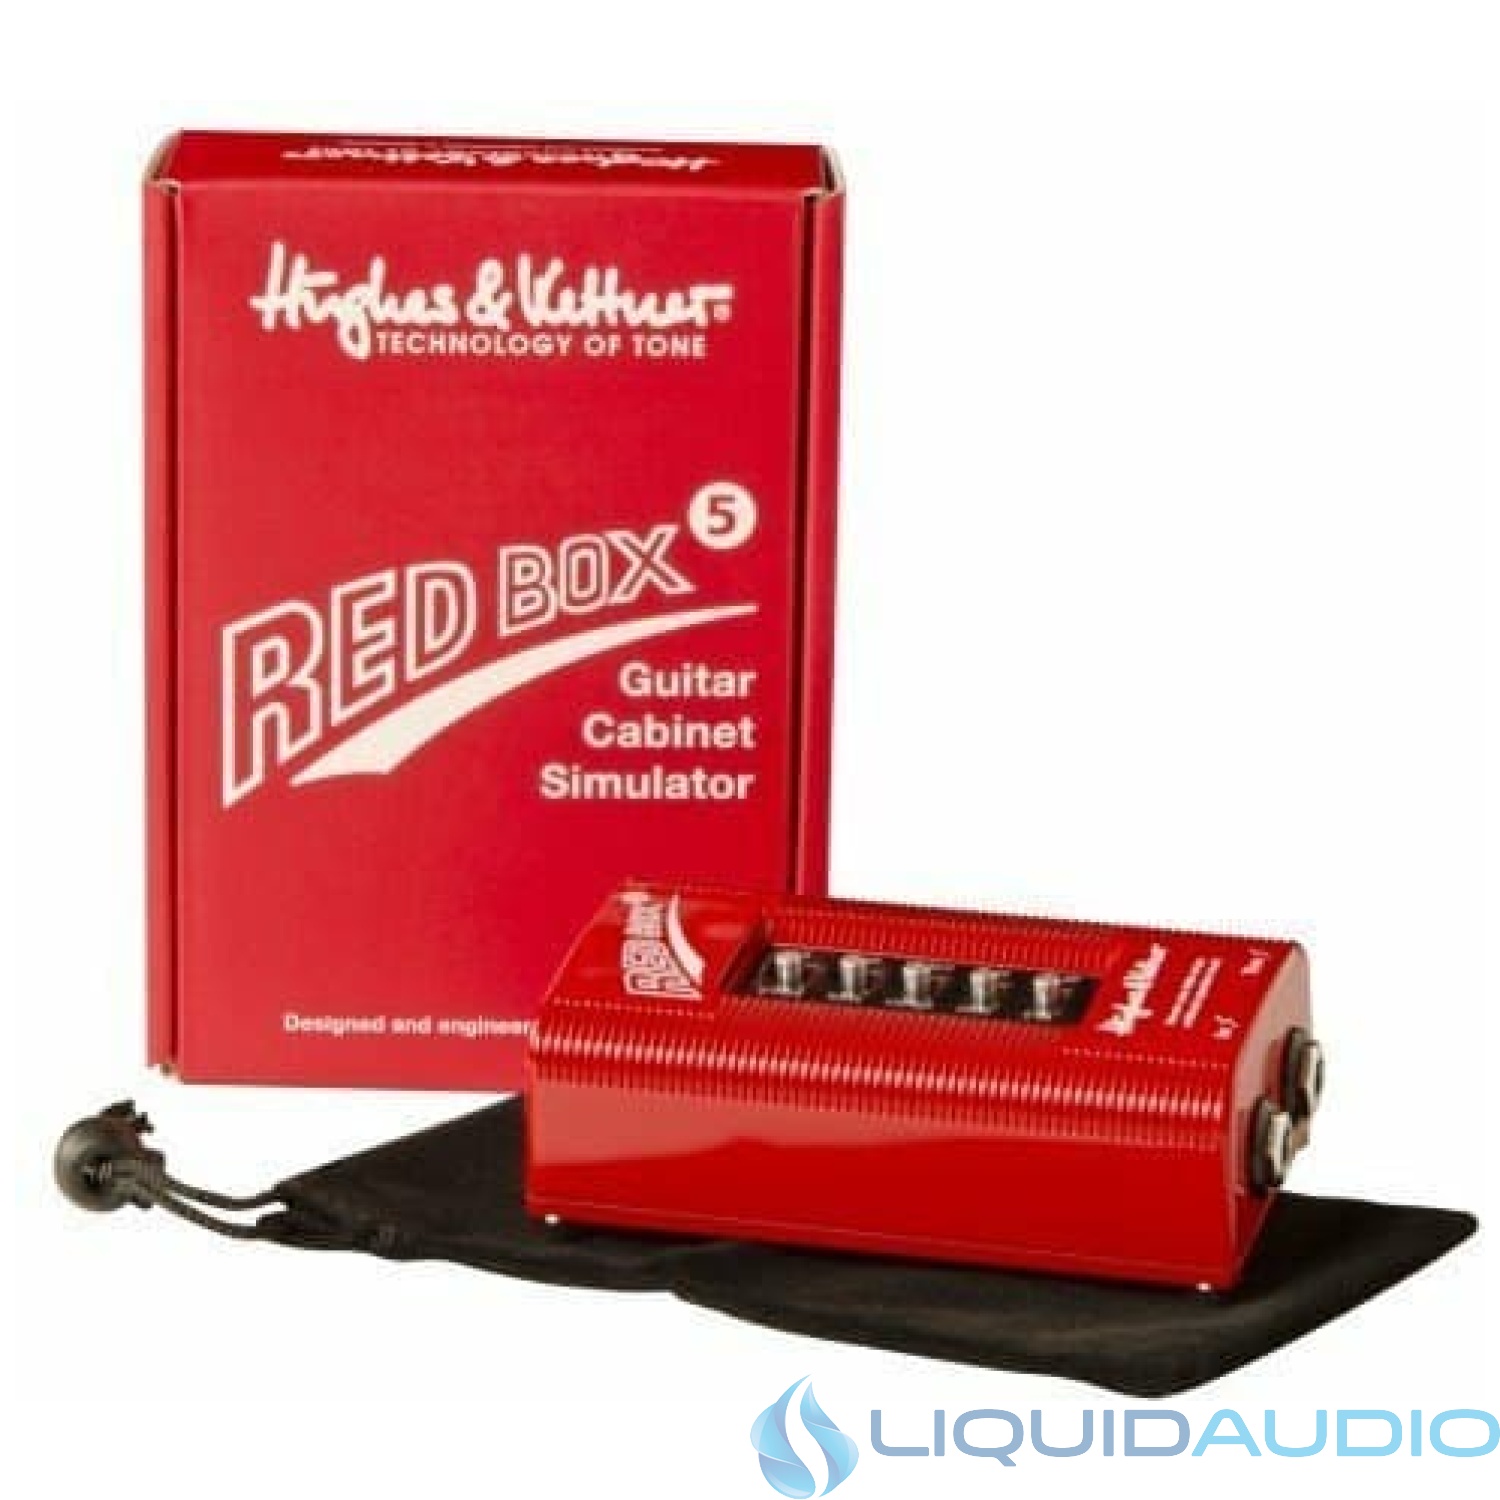 Hughes & Kettner Redbox 5 DI and Speaker Simulator